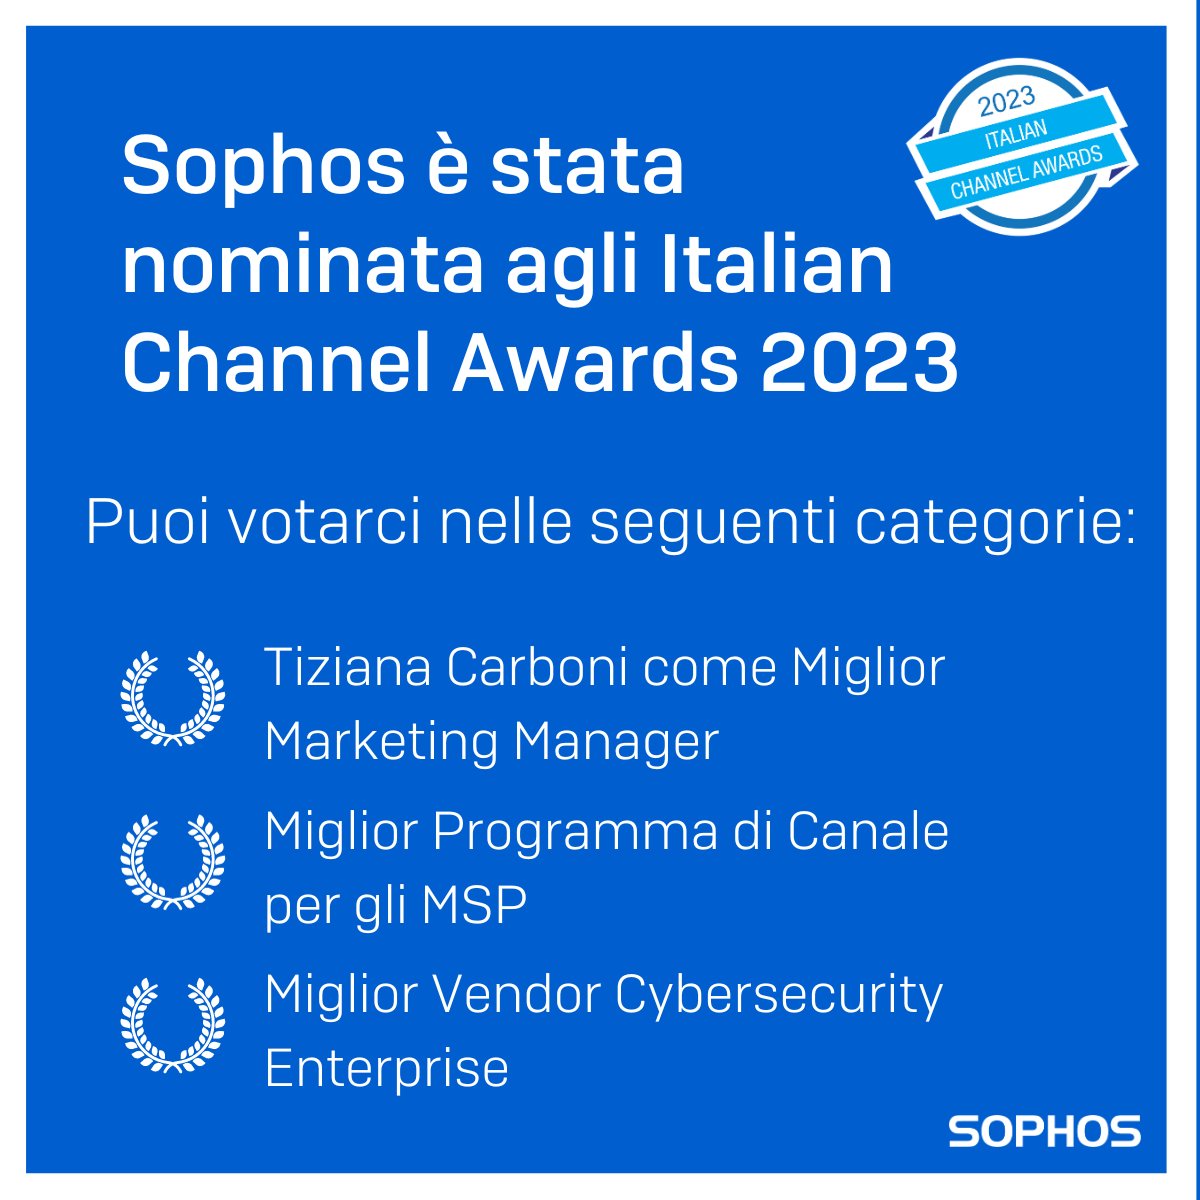 Italian Channel Awards 2023 🏆

Votaci anche tu nelle seguenti categorie:
🔸Miglior Programma di Canale per gli MSP
🔸Tiziana Carboni come Miglior Marketing Manager
🔸Miglior Vendor Cybersecurity Enterprise

➡️italianchannelawards.it/votazione_nomi…